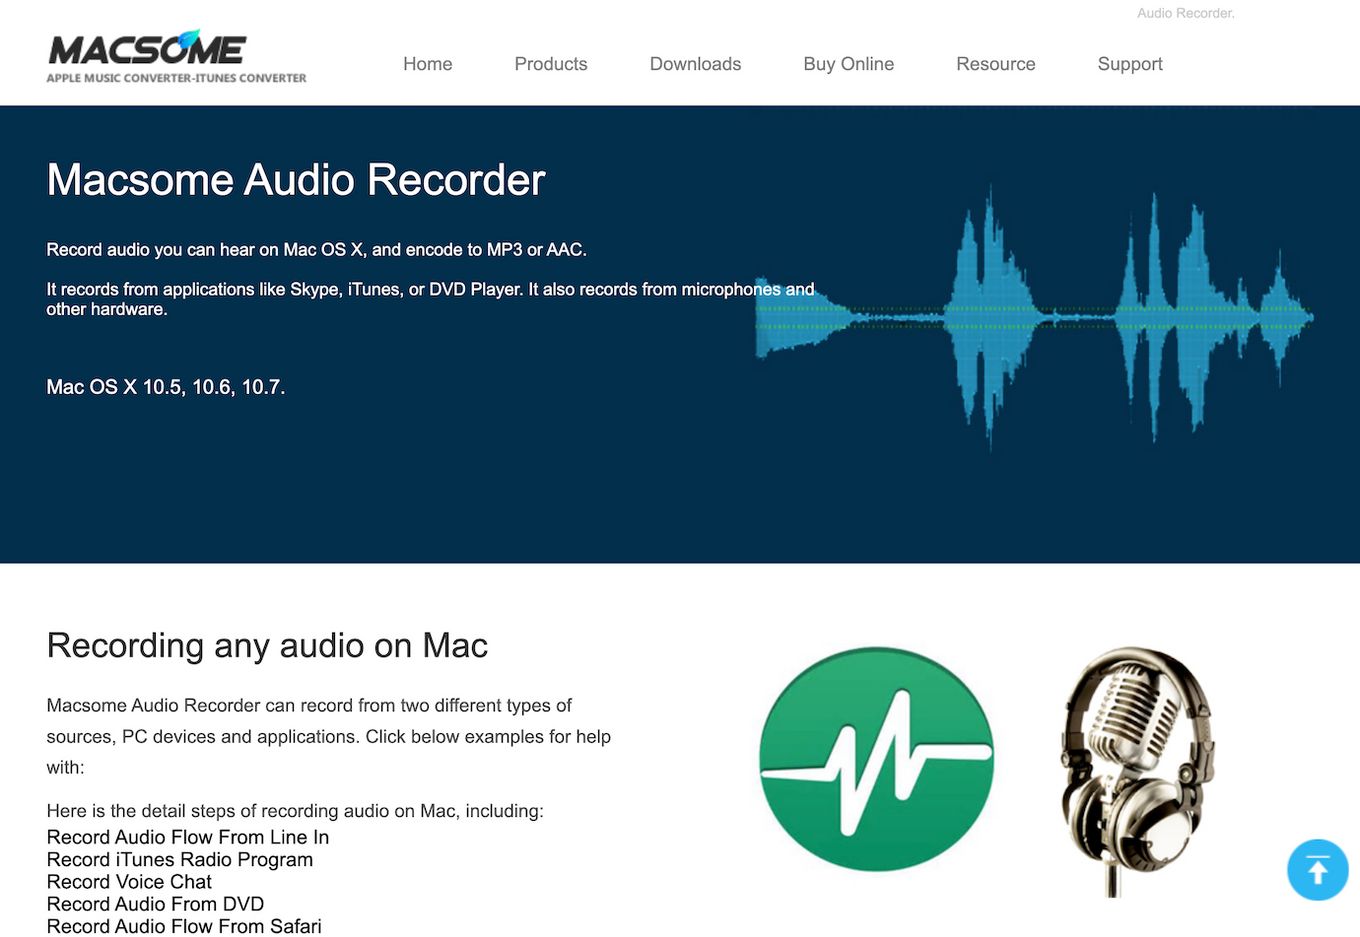 macsome audio recorder